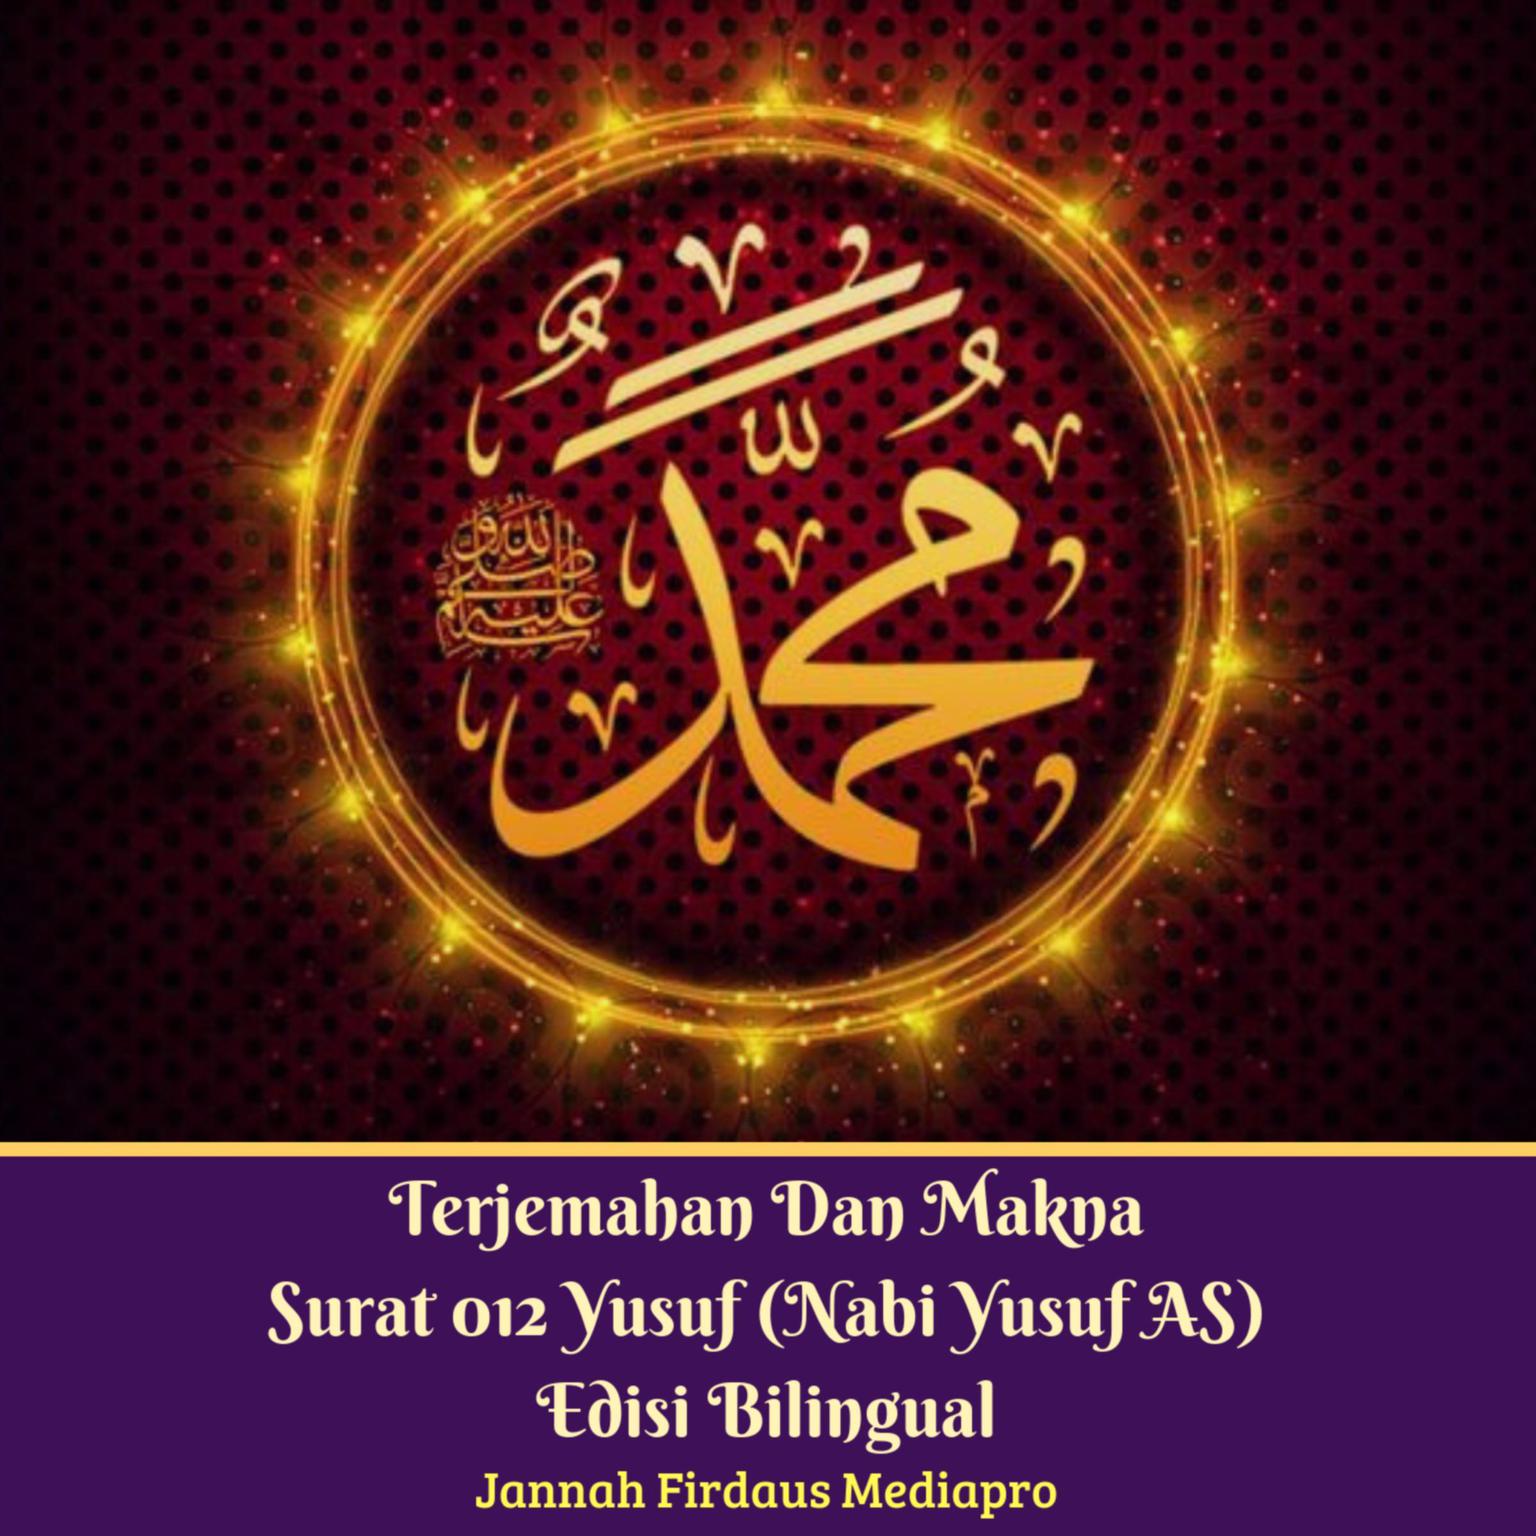 Terjemahan Dan Makna Surat 012 Yusuf (Nabi Yusuf AS) Edisi Bilingual Audiobook, by Jannah Firdaus Foundation